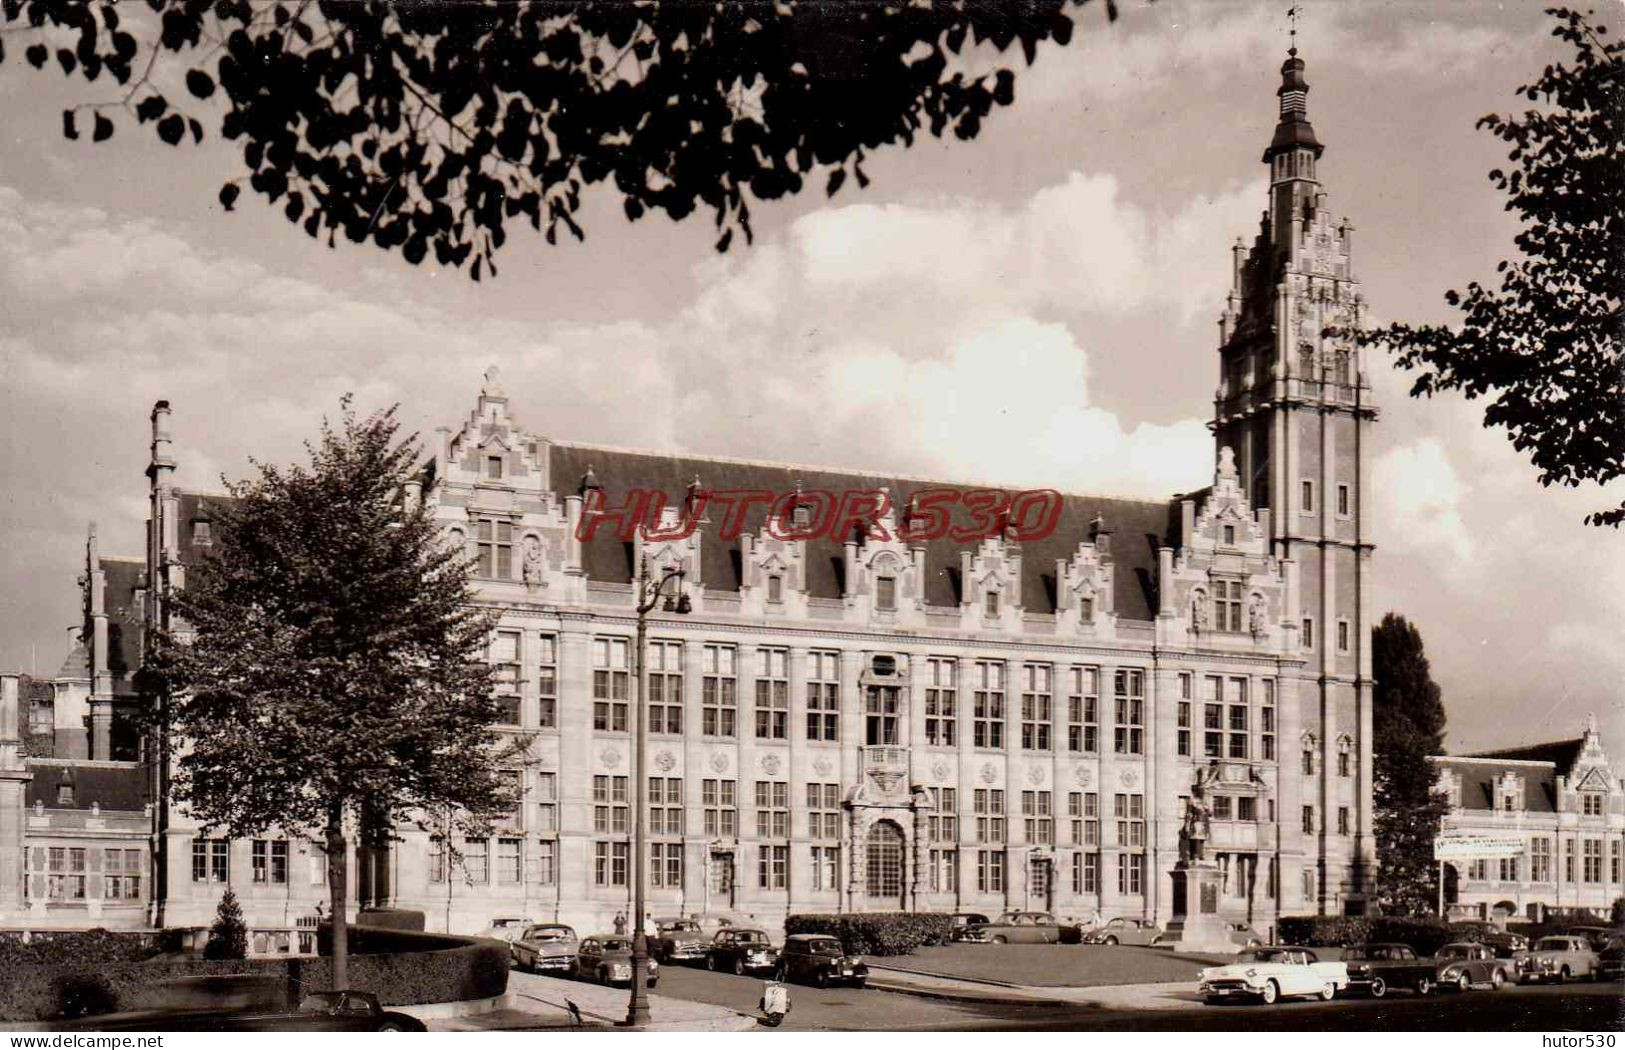 CPSM BRUXELLES - UNIVERSITE LIBRE DE BRUXELLES - Education, Schools And Universities